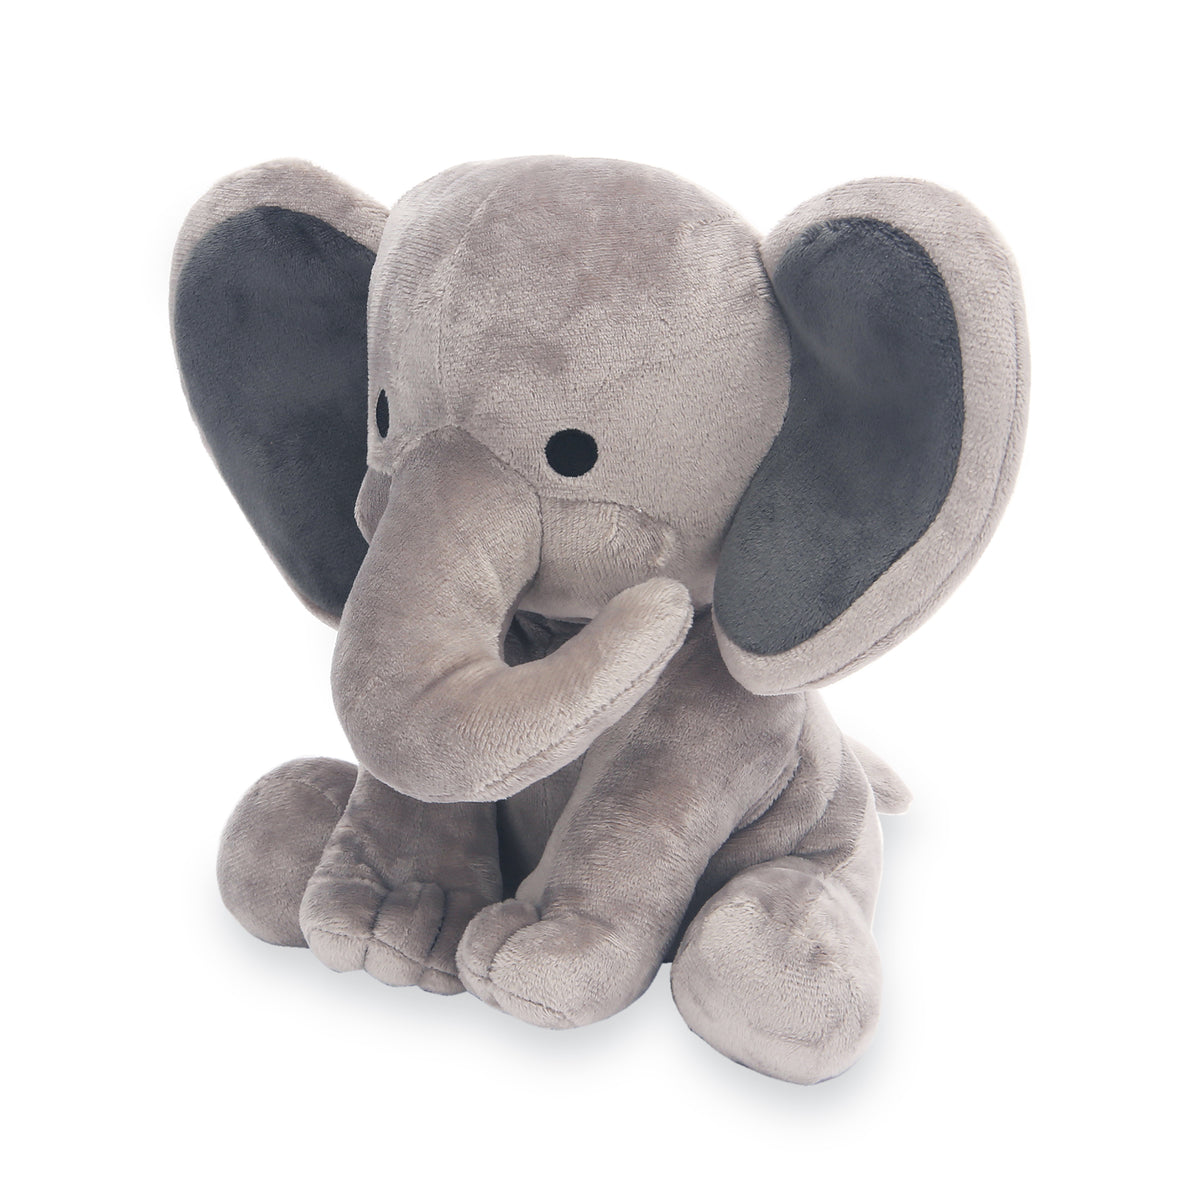 where can i buy a stuffed elephant